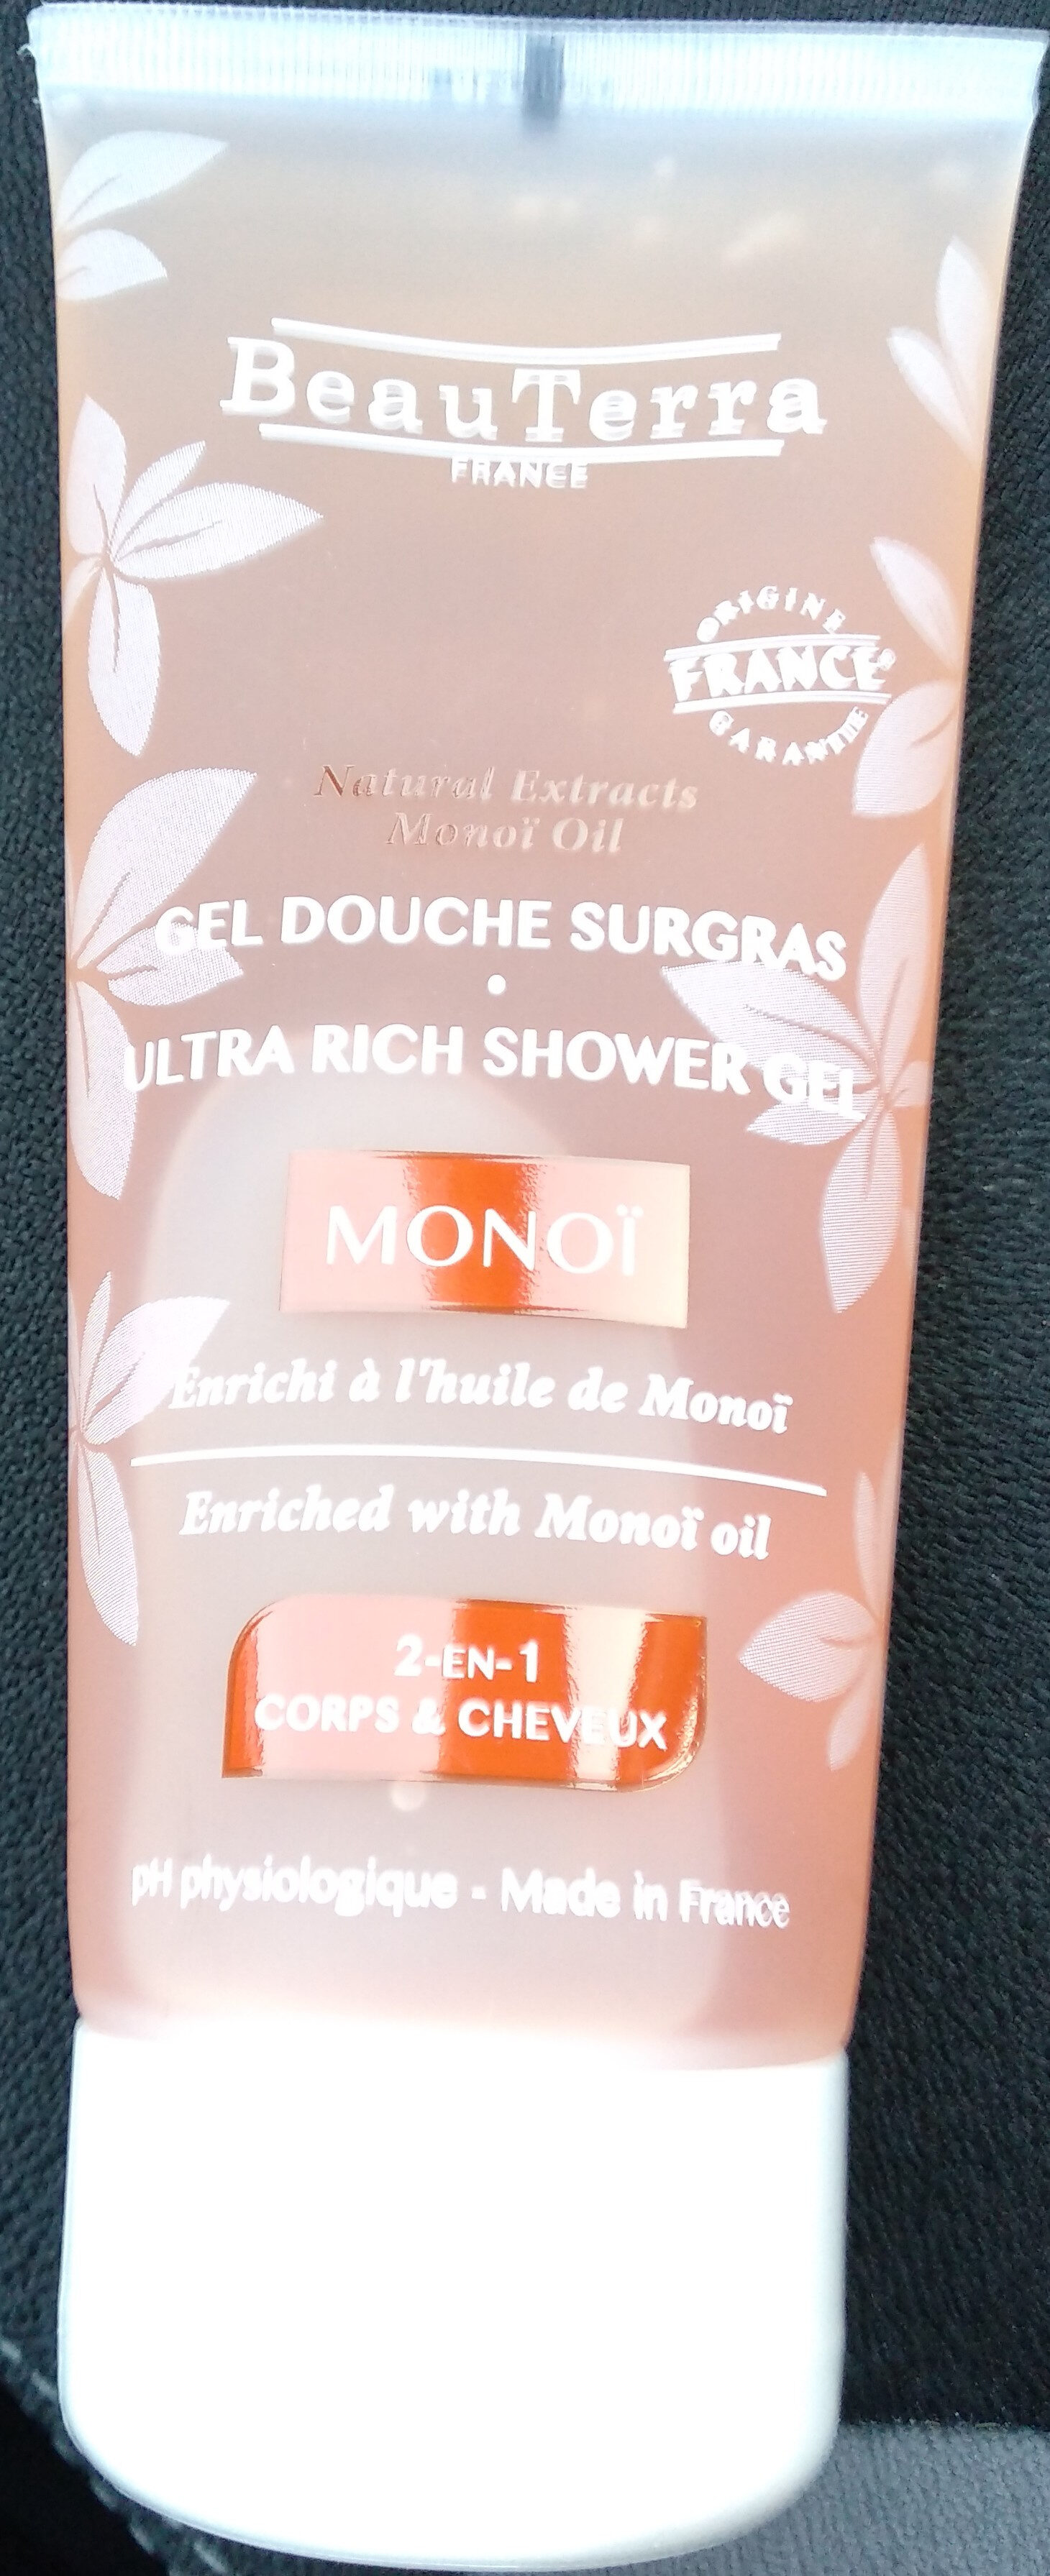 Gel douche surgras Monoï - Product - fr